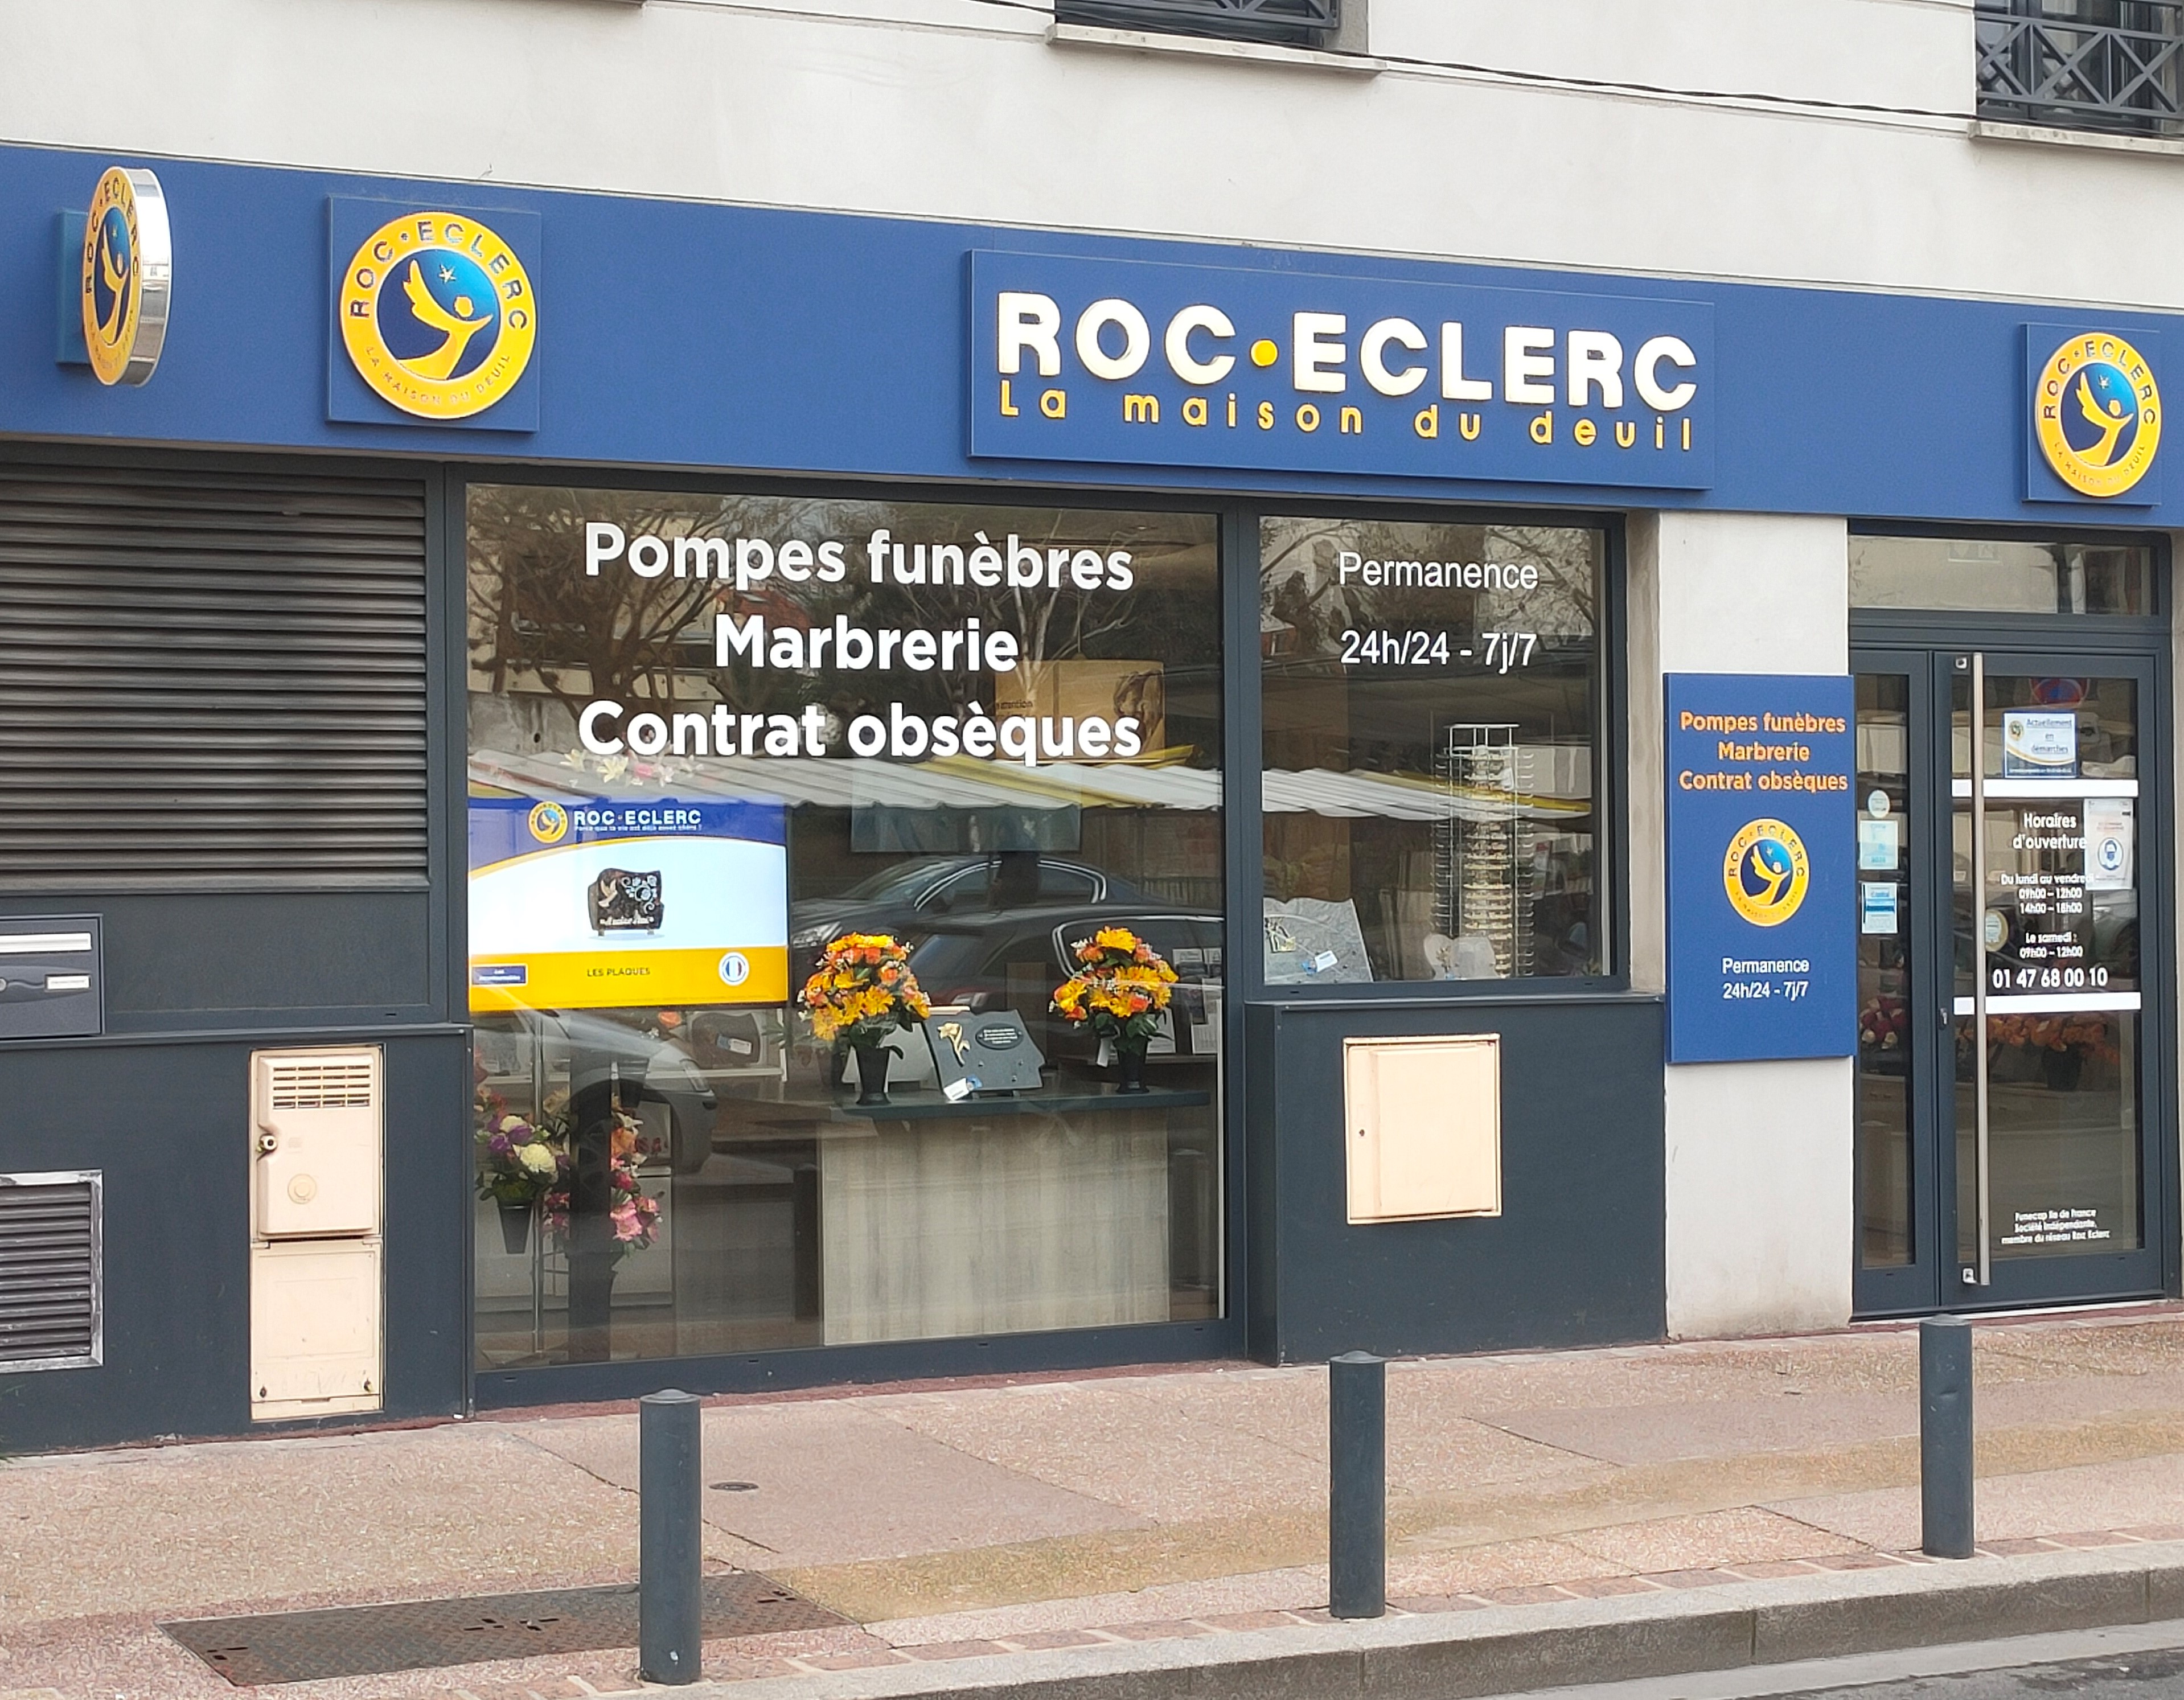 Pompes Funèbres ROC ECLERC - Courbevoie - Marceau 